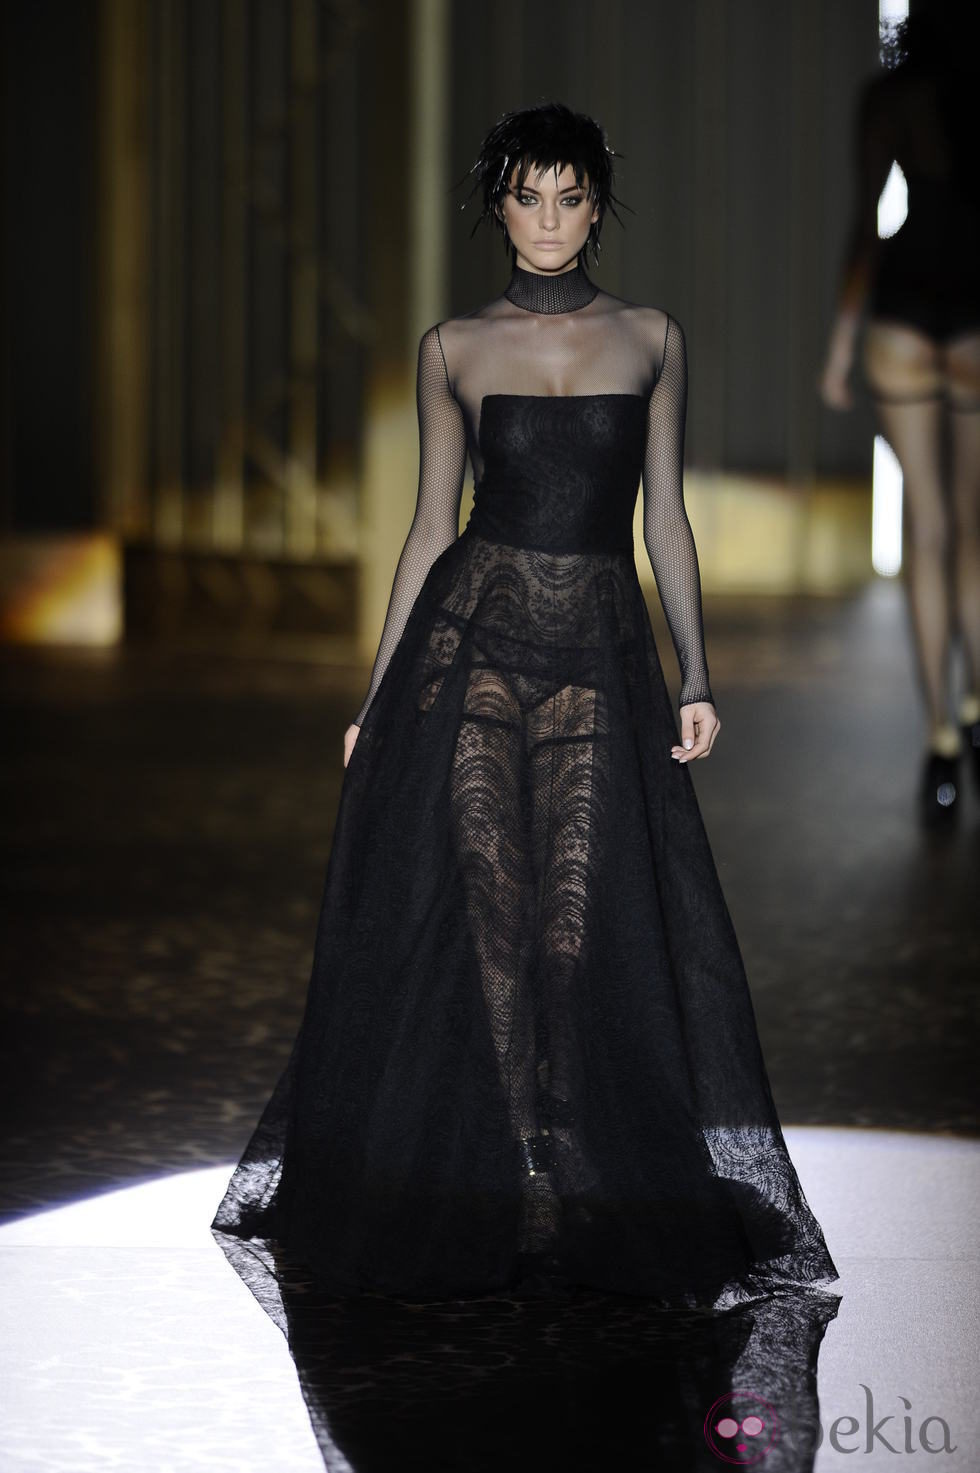 Color negro en la colección otoño/invierno 2013/2014 de Andrés Sardá en Madrid Fashion Week